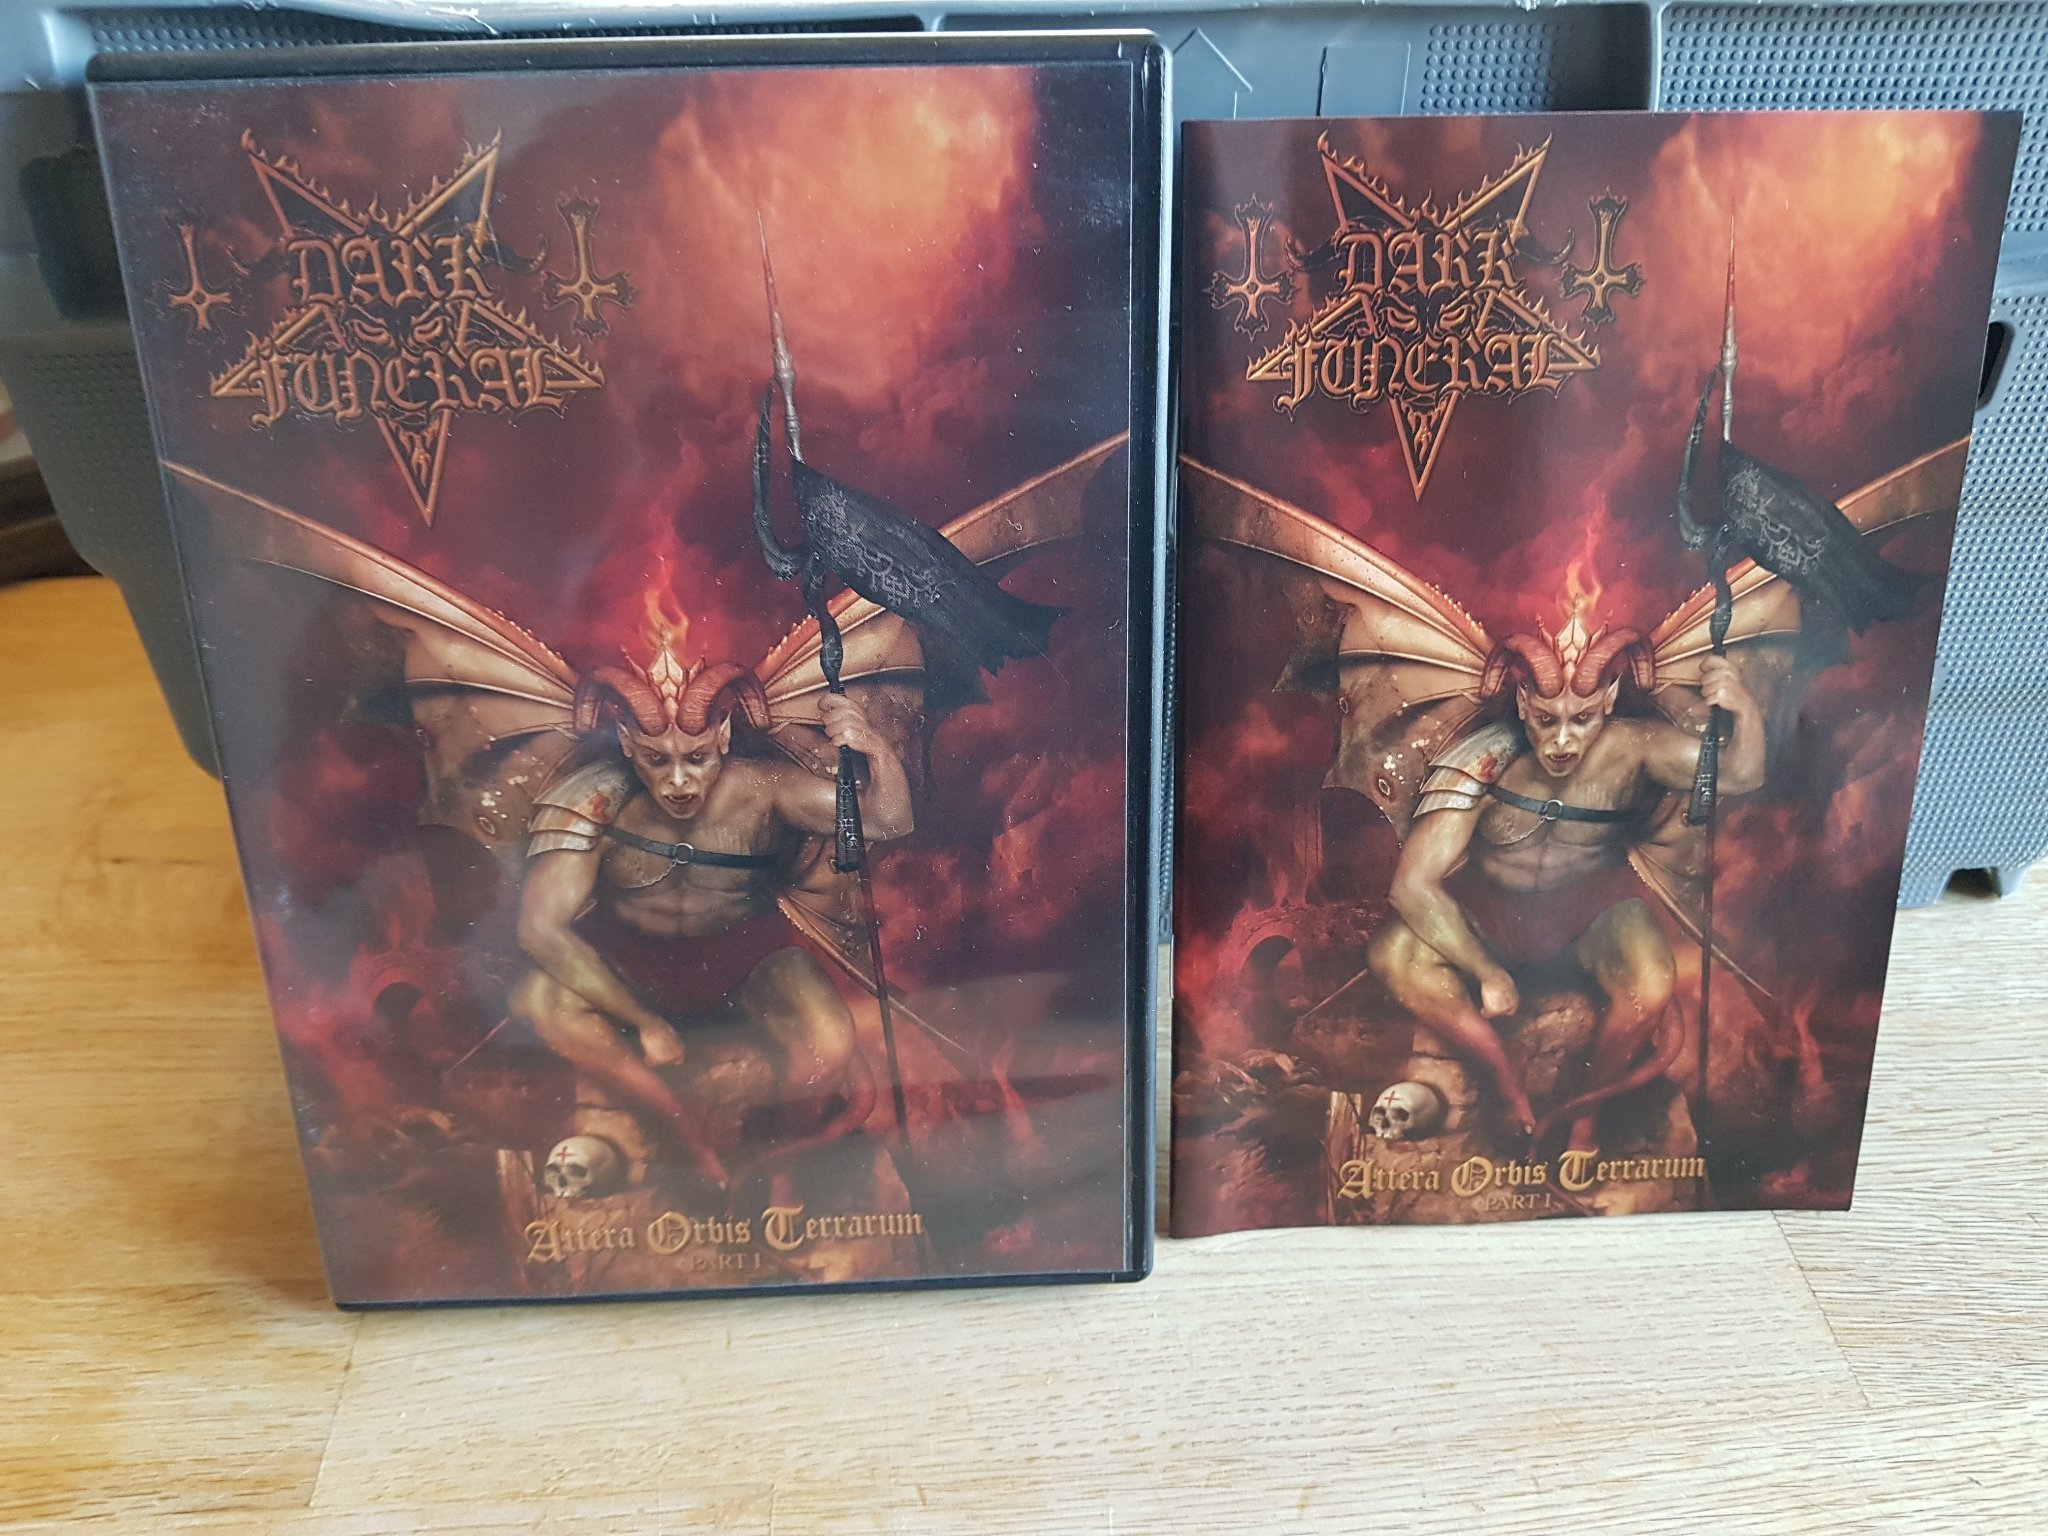 Dark Funeral Album Covers - HD Wallpaper 